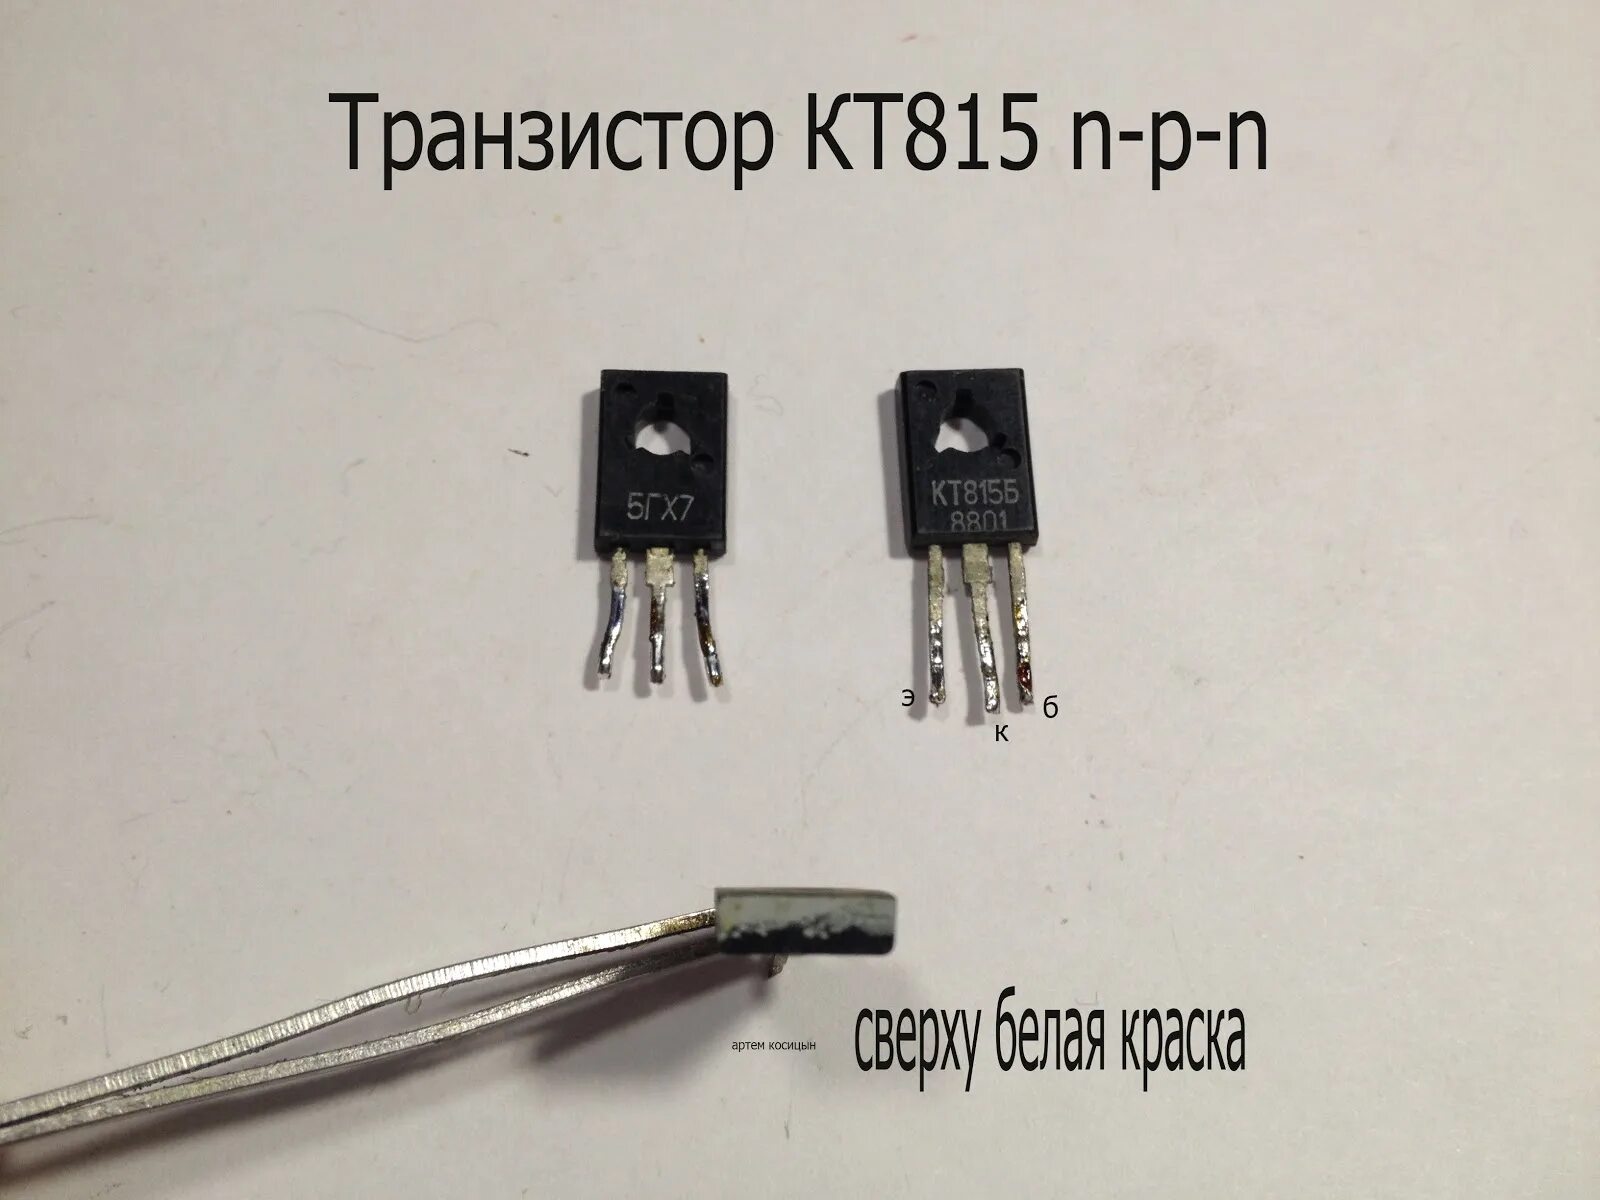 Кт 815. Кт 815 транзистор параметры цоколевка. Кт815г транзистор параметры цоколевка. Маркировка транзисторов кт815 кт817. Транзисторы кт814 кт815 кт816 кт817.